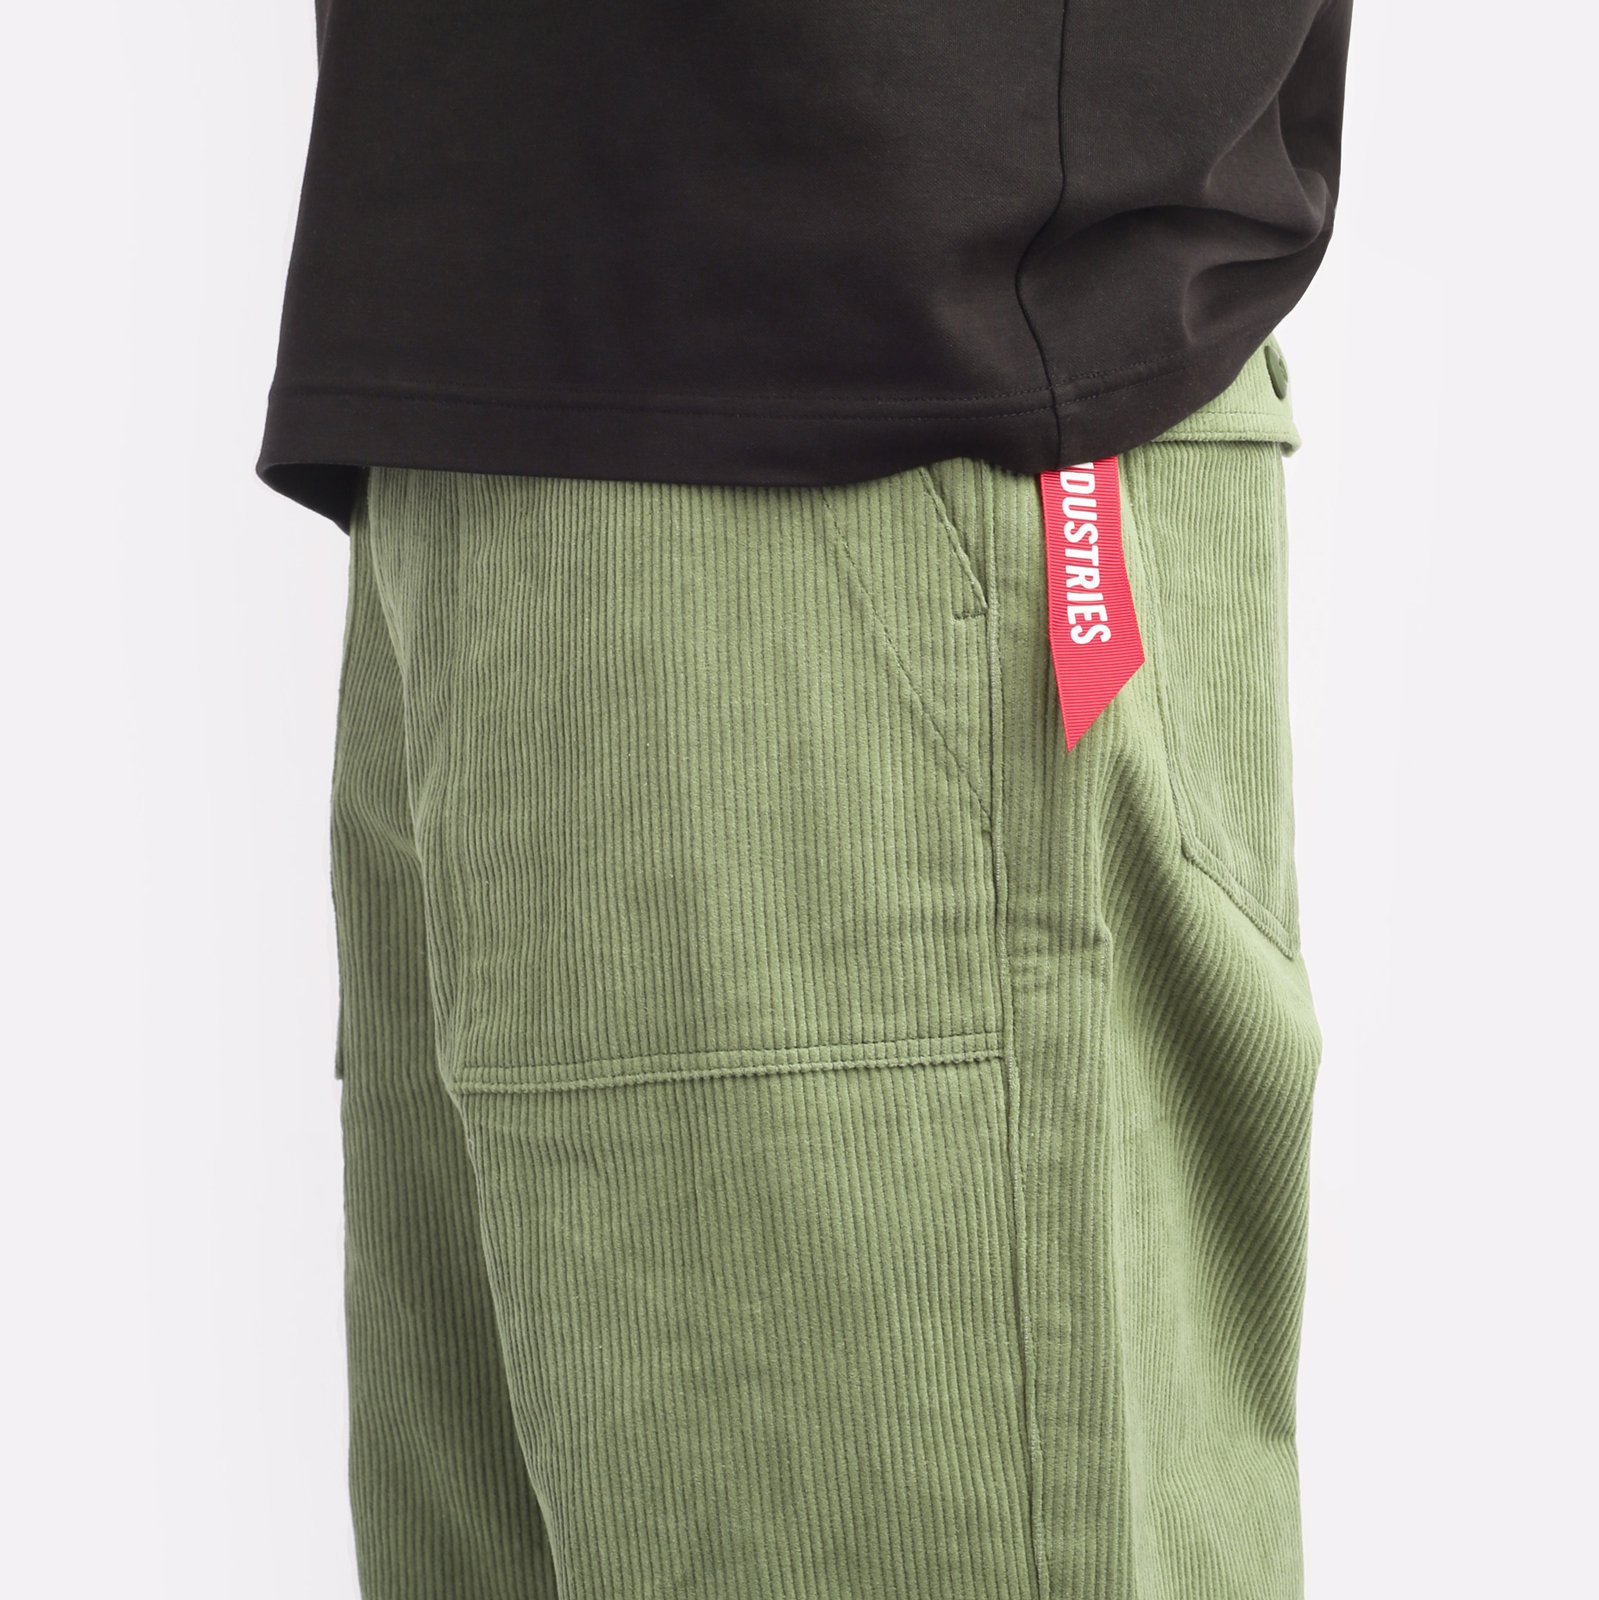 мужские брюки Alpha Industries Corduroy Fatigue Pant  (MBC53501CO-green)  - цена, описание, фото 4